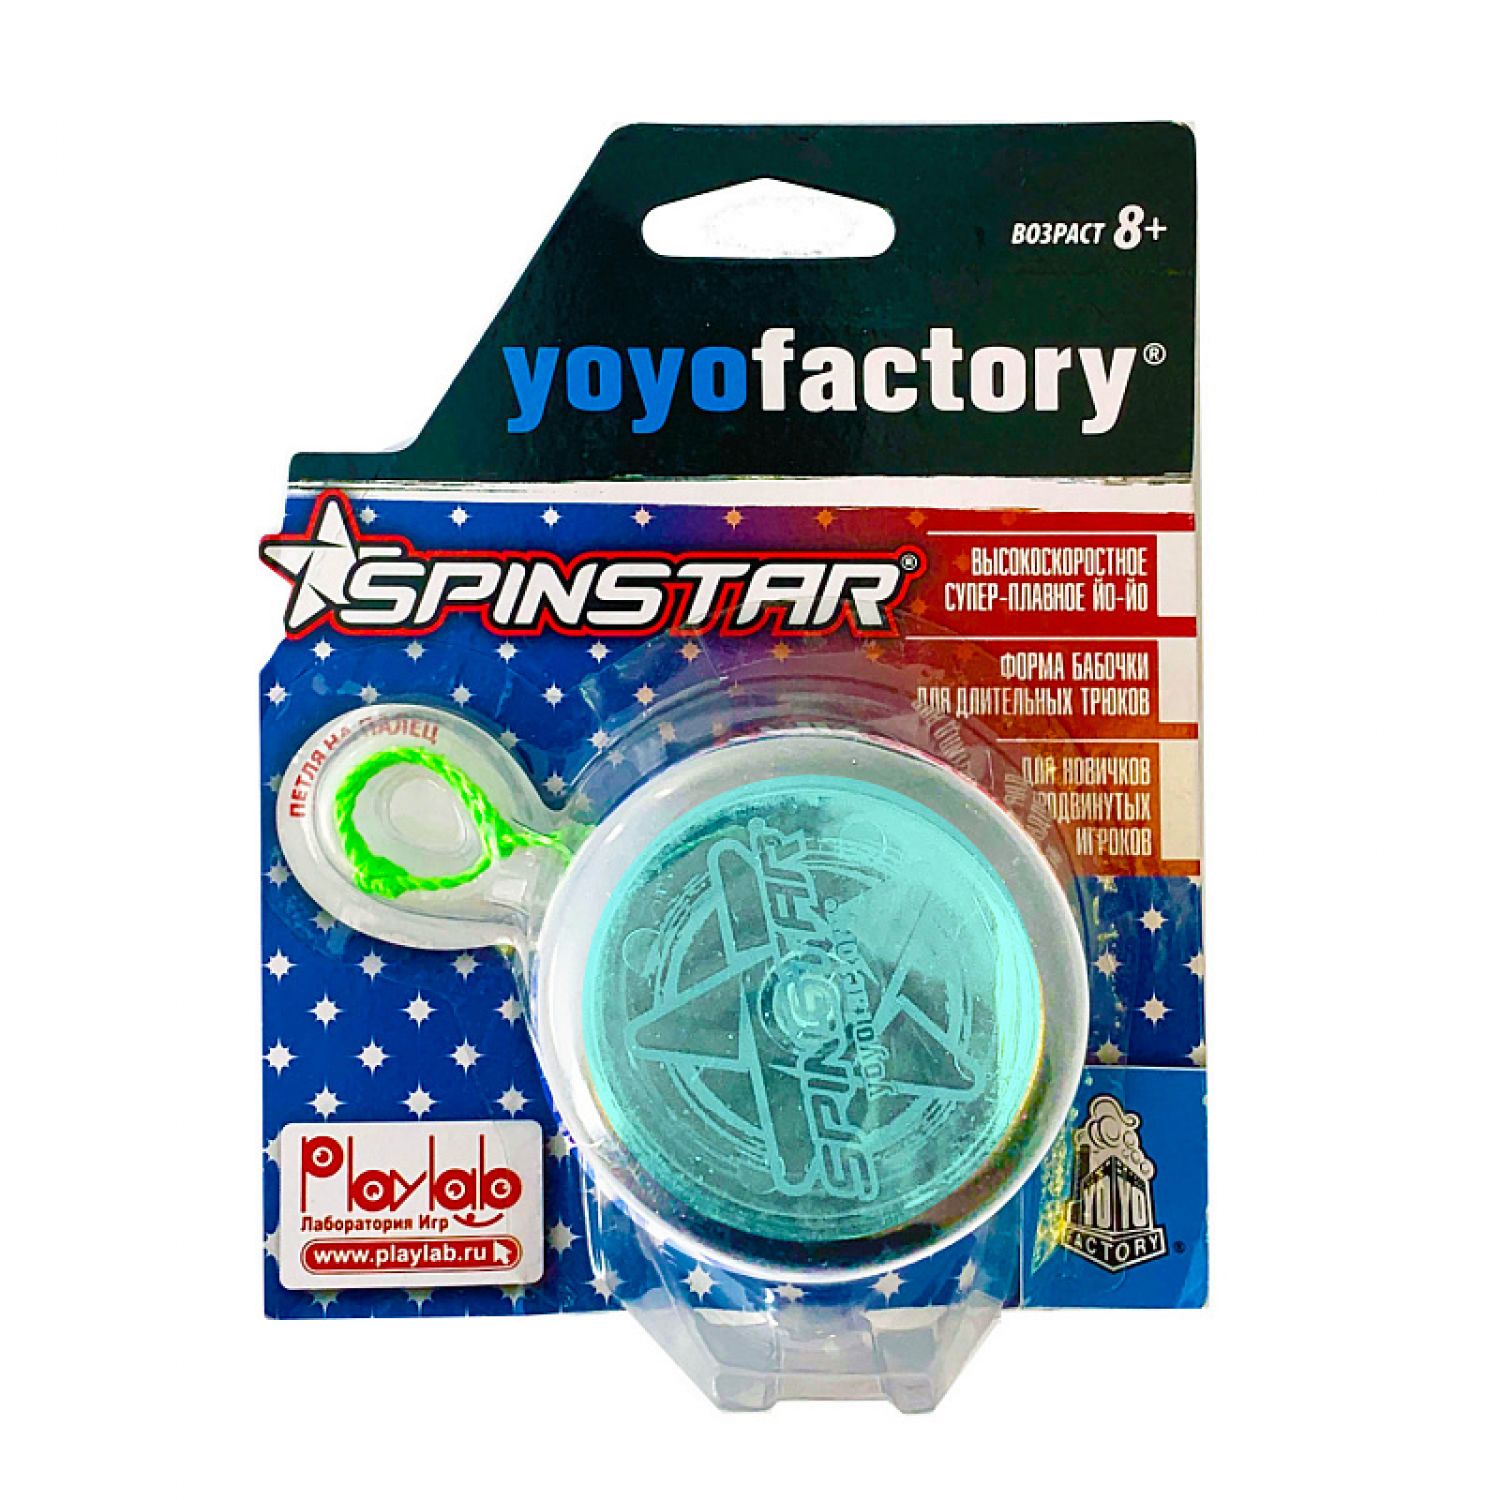 Развивающая игрушка YoYoFactory Йо-йо SpinStar прозрачный голубой - фото 2